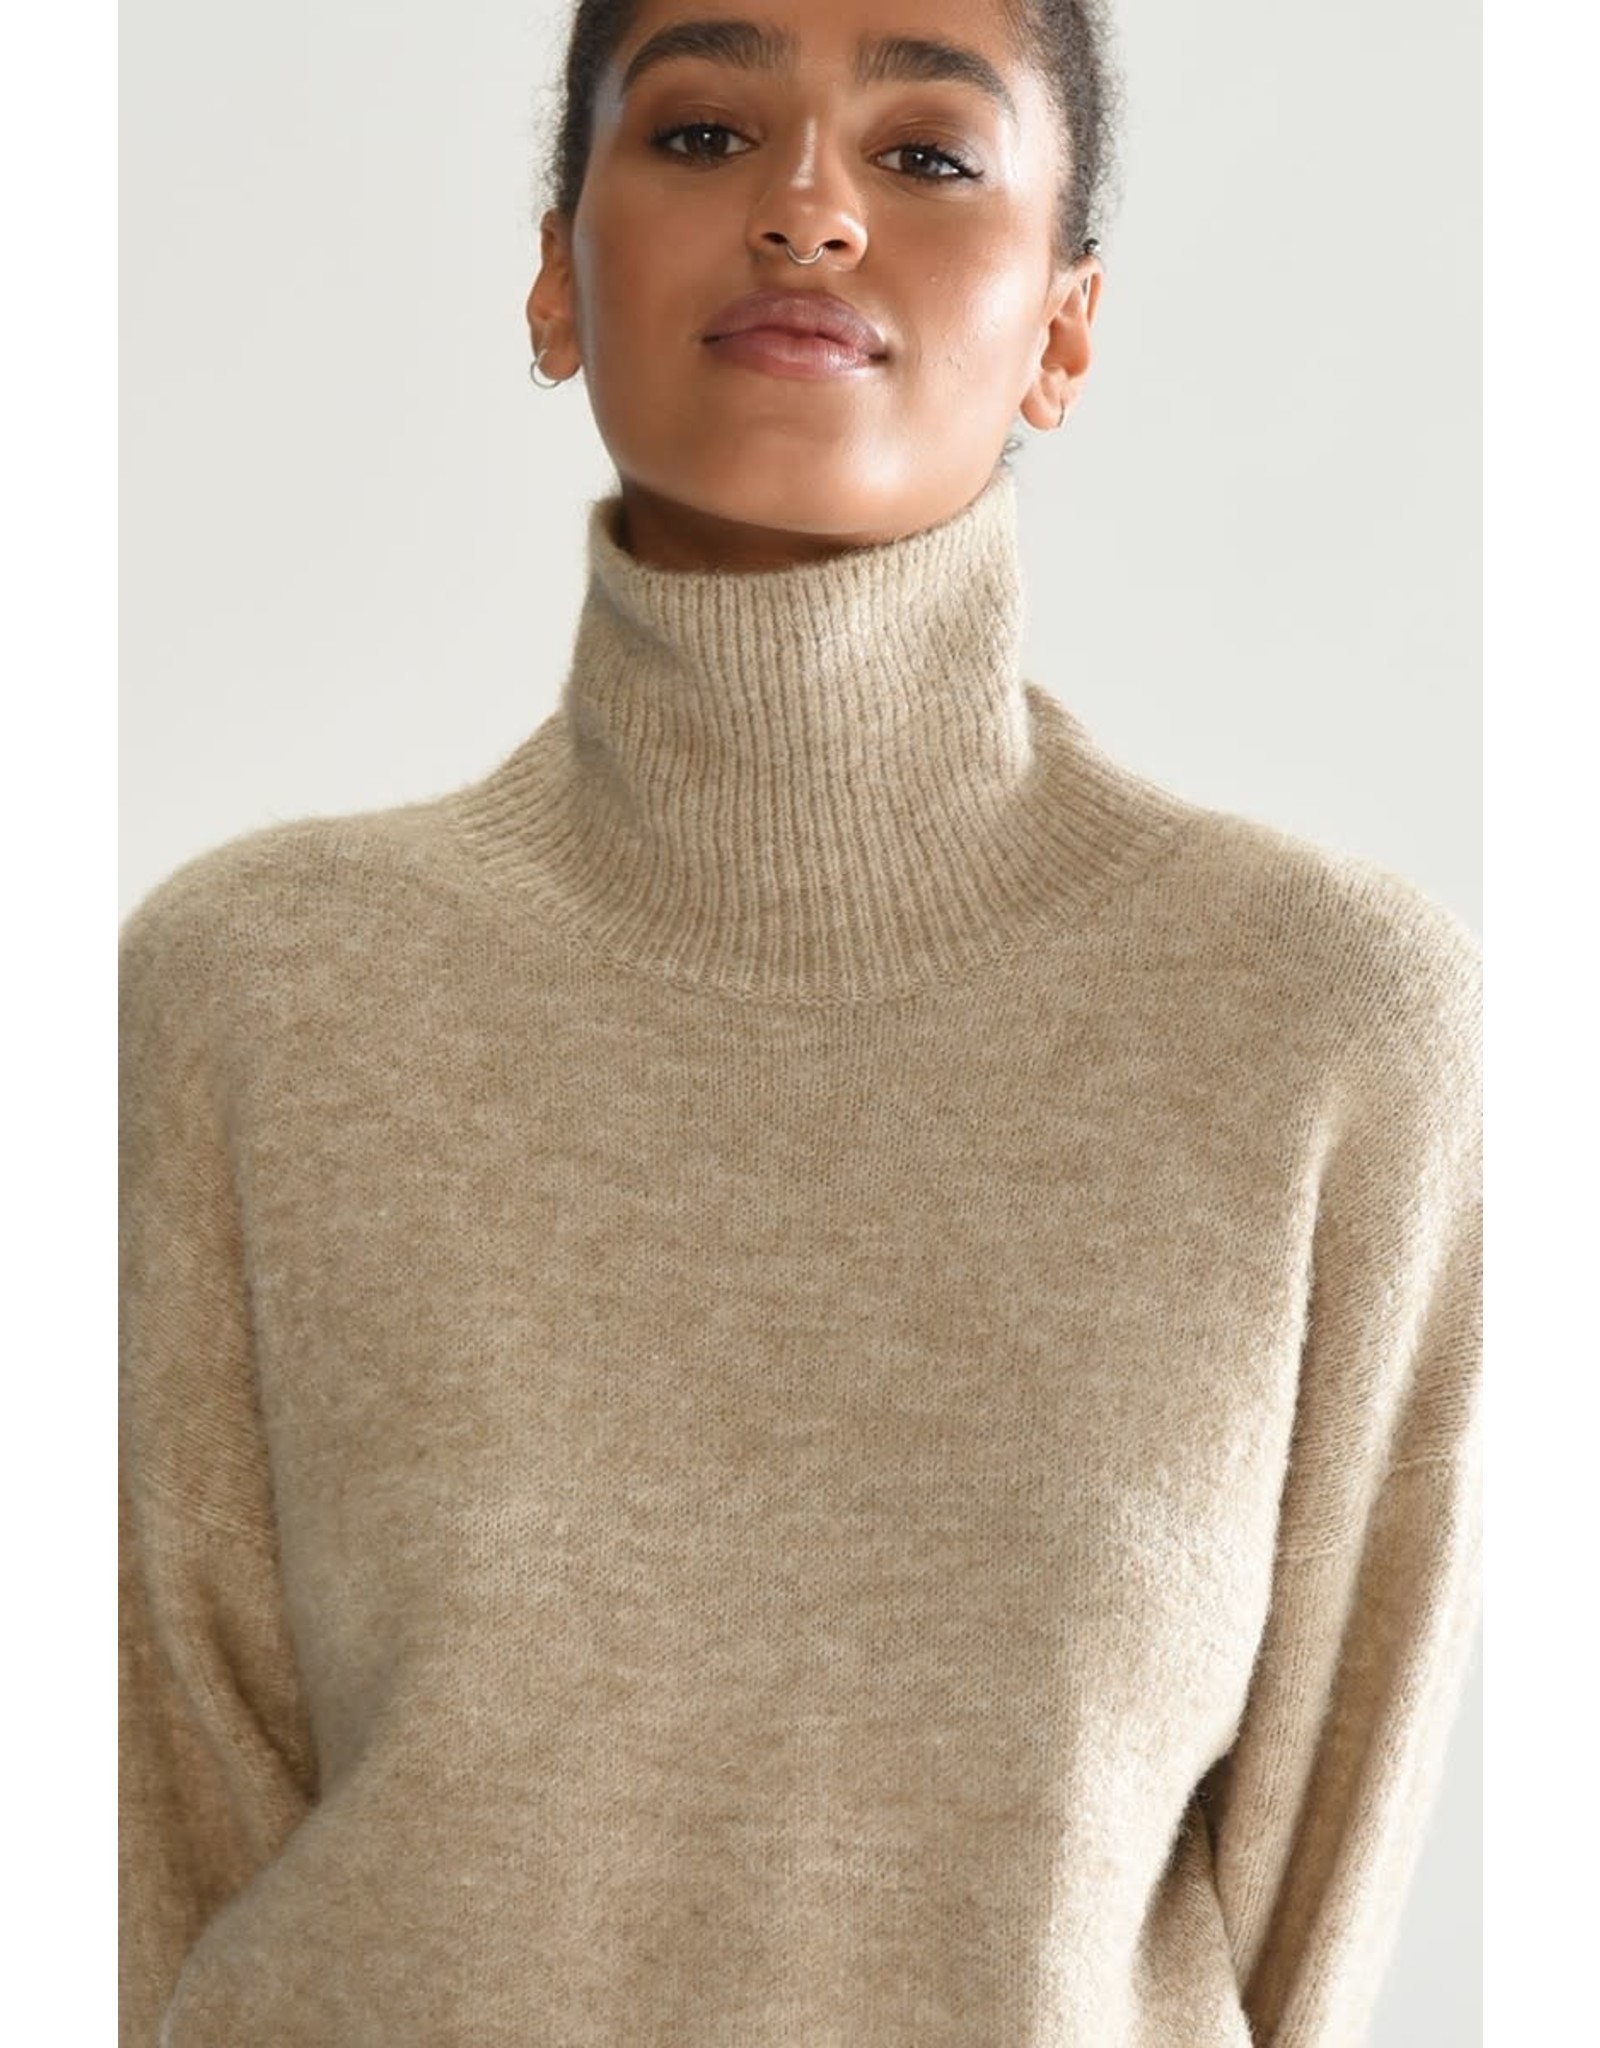 Molly Bracken Molly Bracken - Knit sweater (beige)